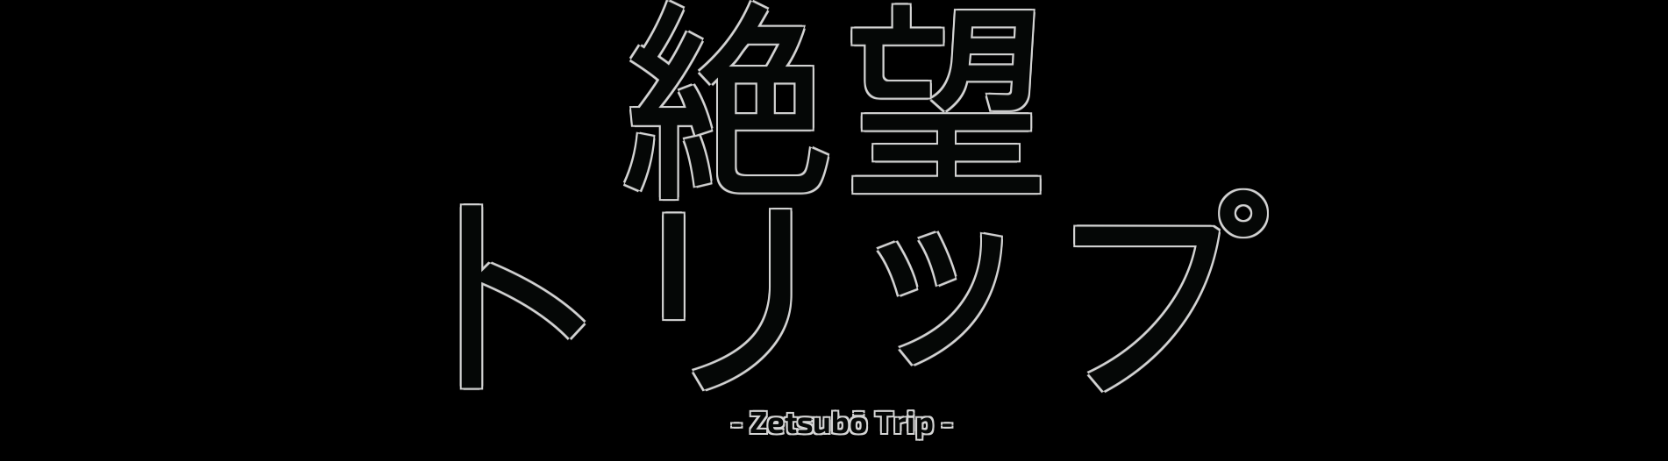 Zetsubou Trip (Demo)